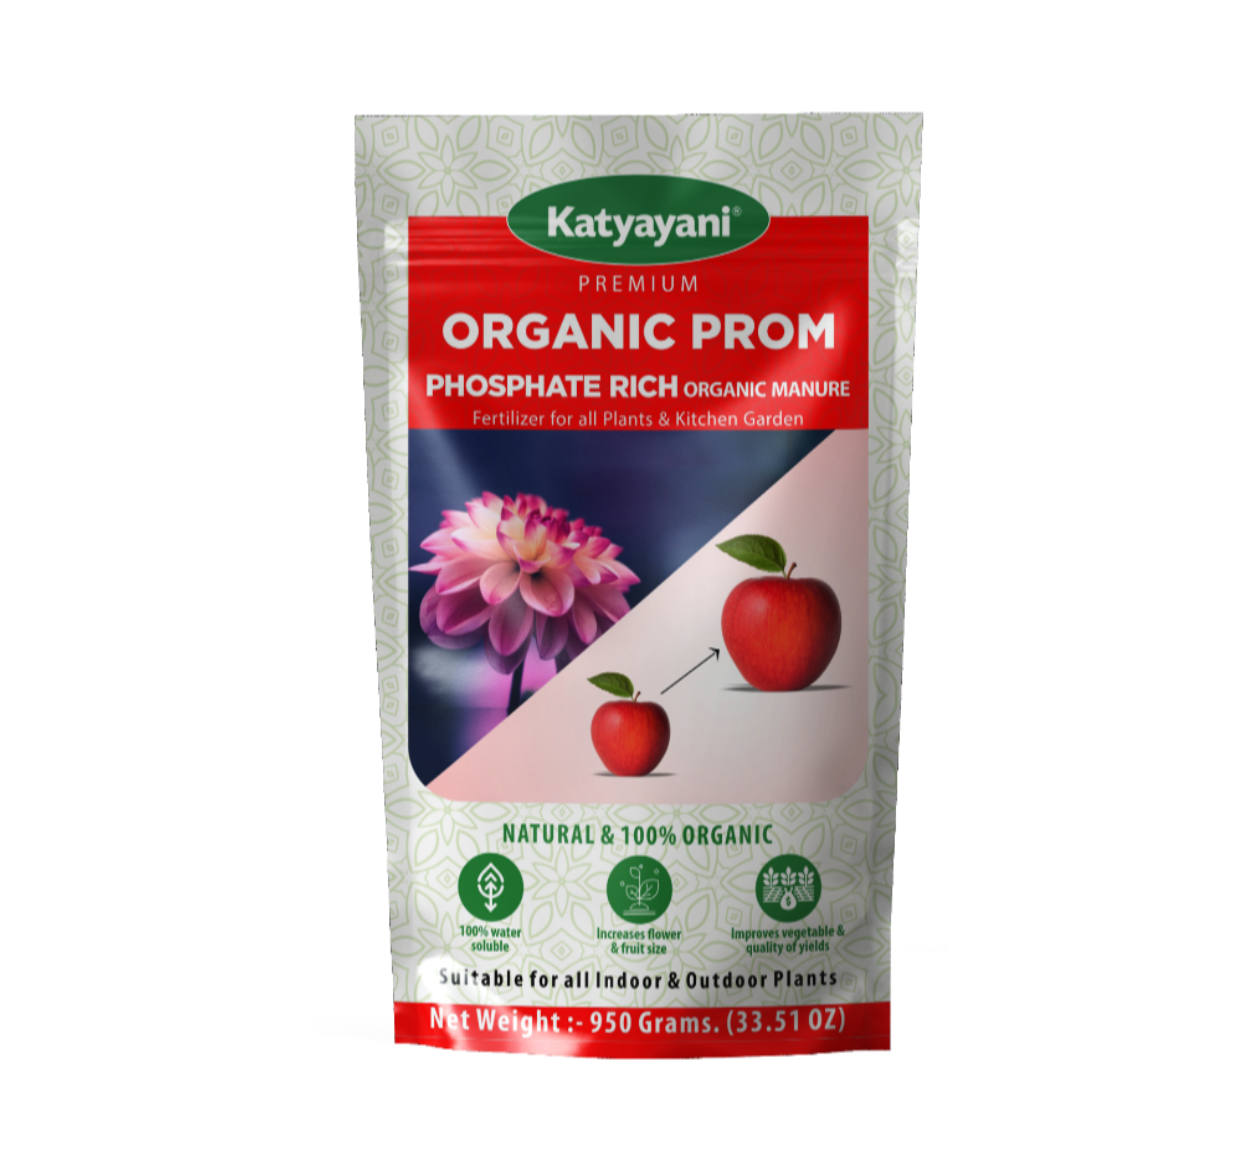 Katyayani Prom organic fertilizer